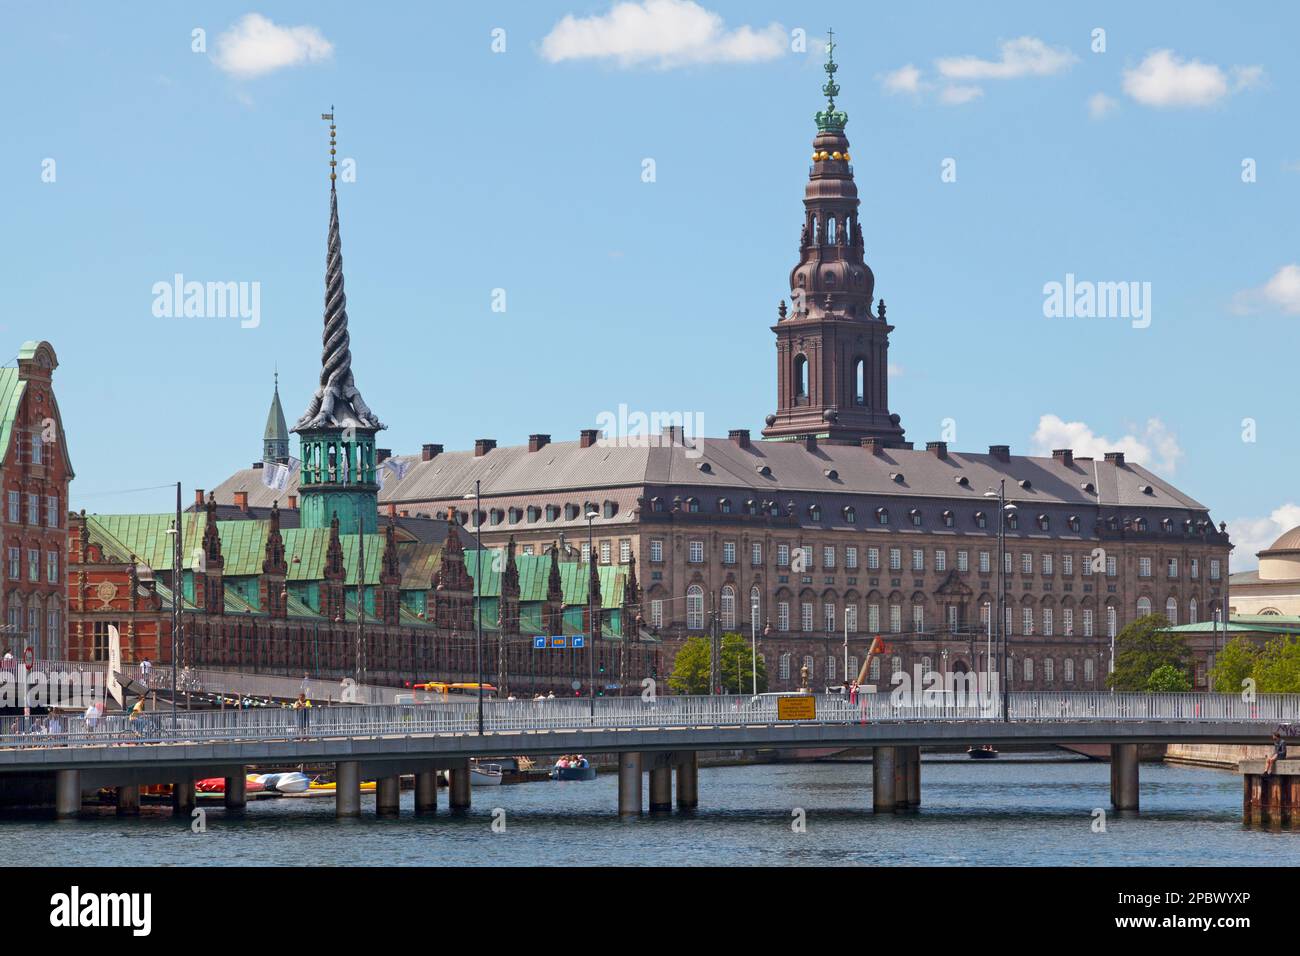 Copenhague, Danemark - 28 juin 2019: Le Børsen (Danois: Échange) à côté du Palais de Christiansborg (Danois: Fente de Christiansborg). Banque D'Images